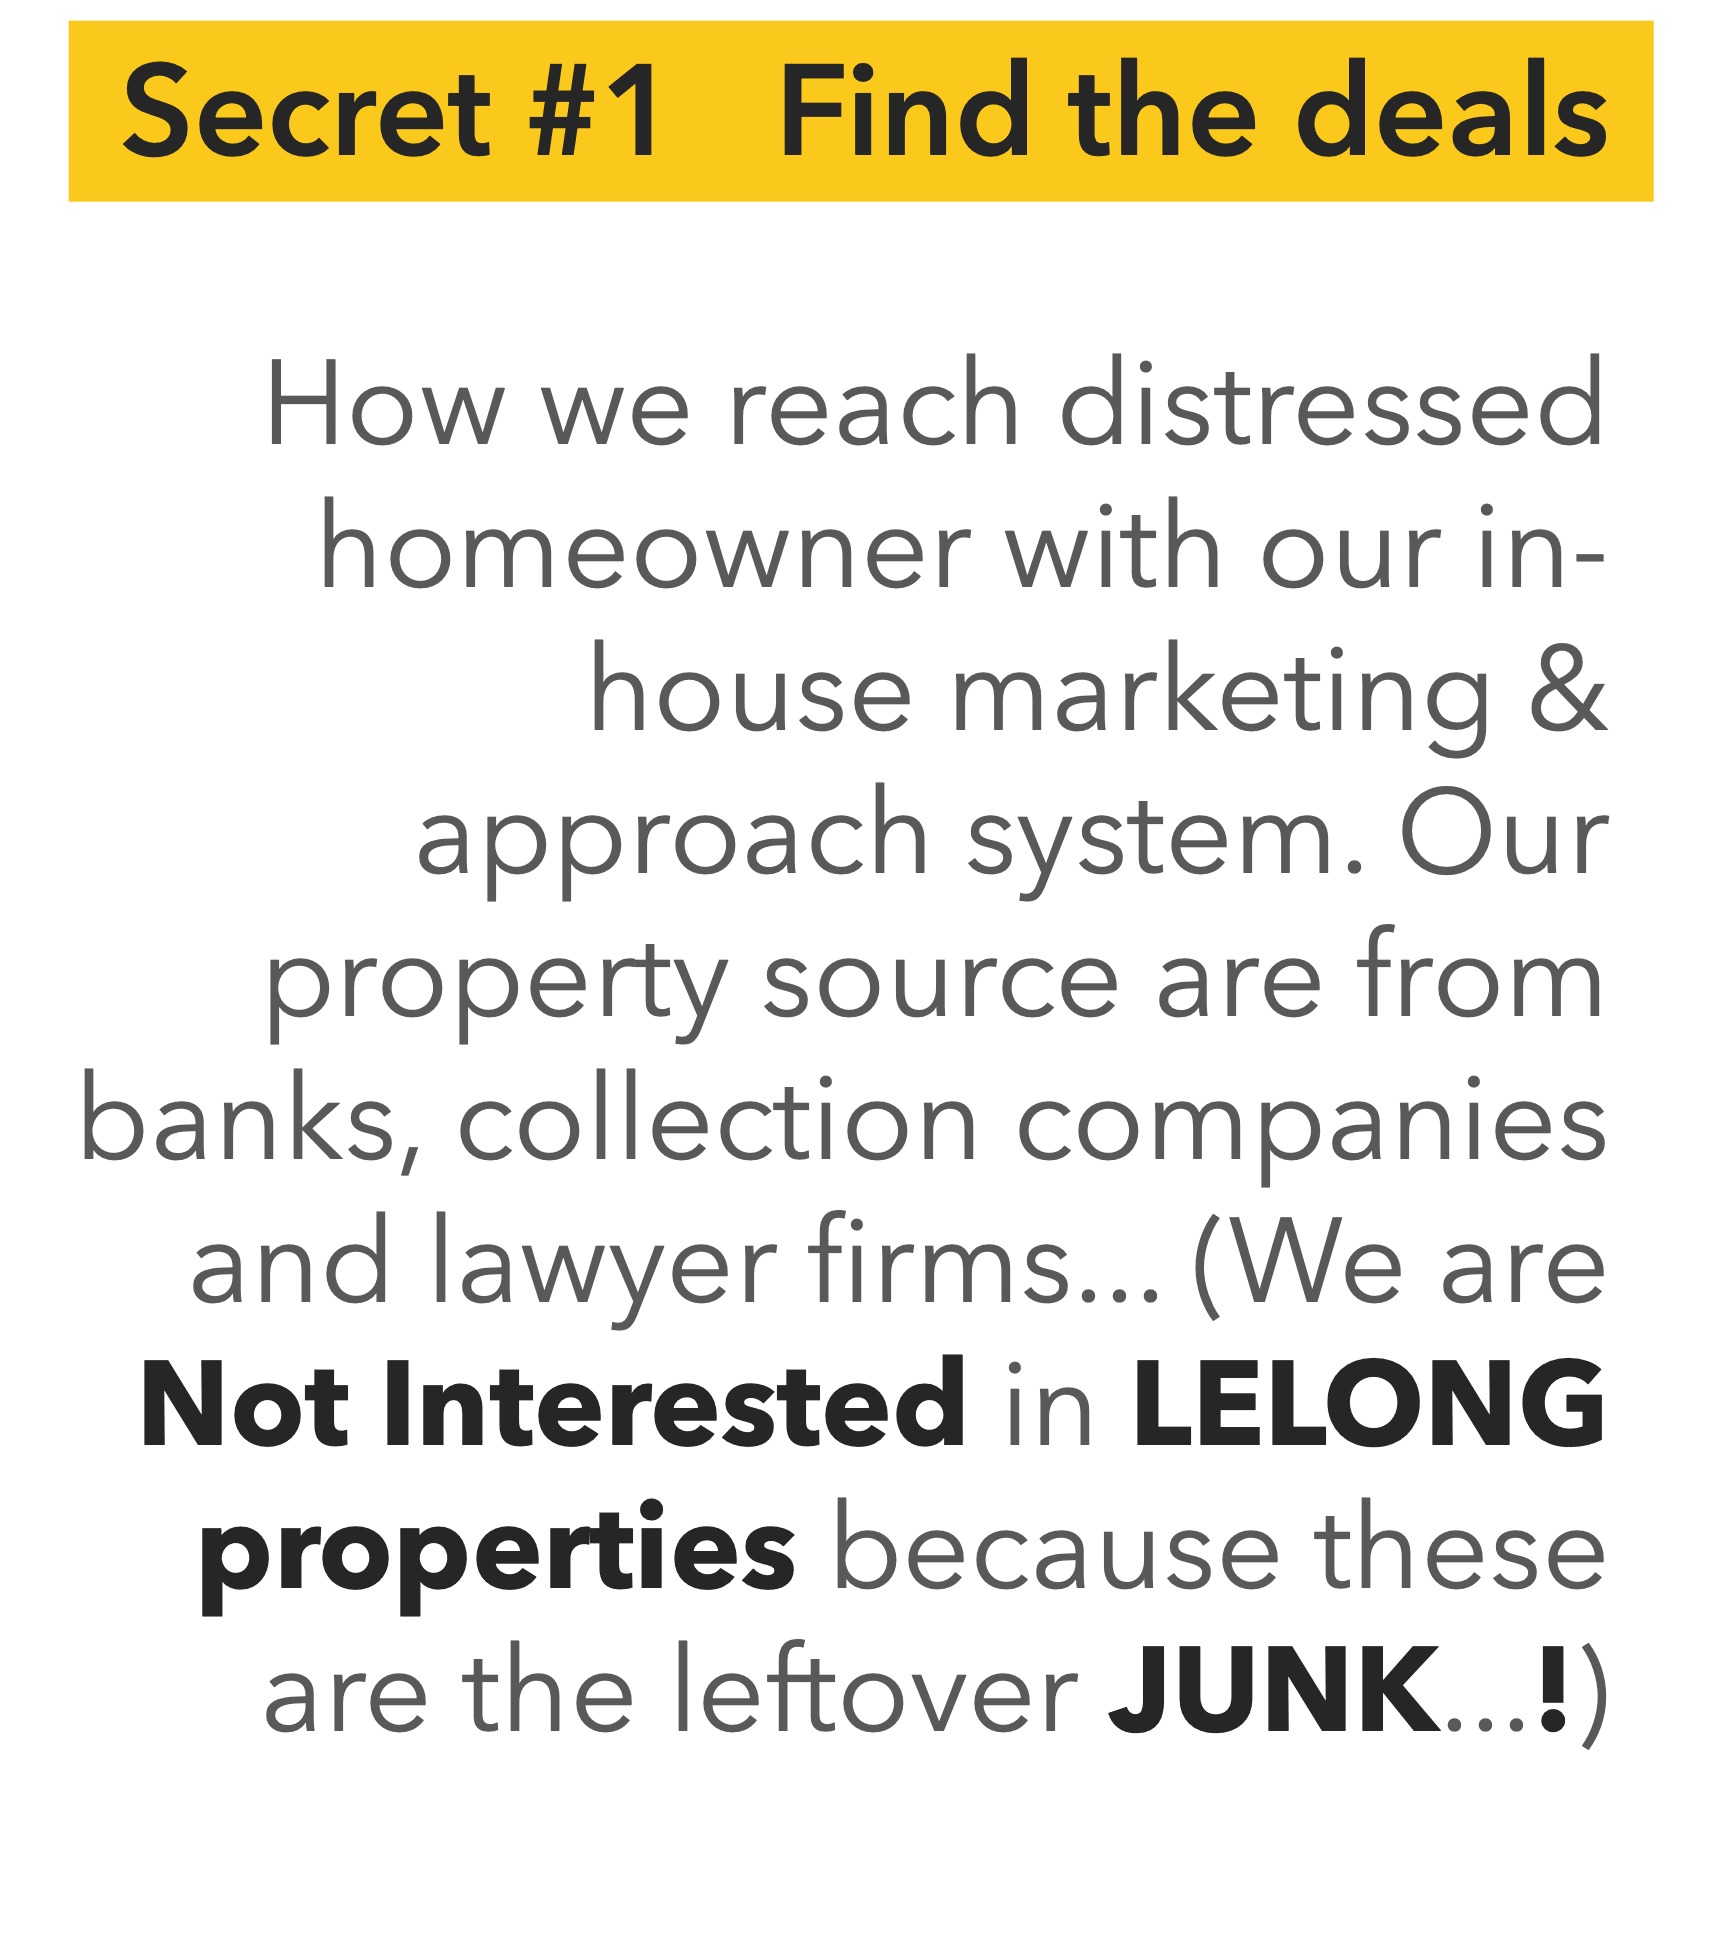 below market value auction lelong